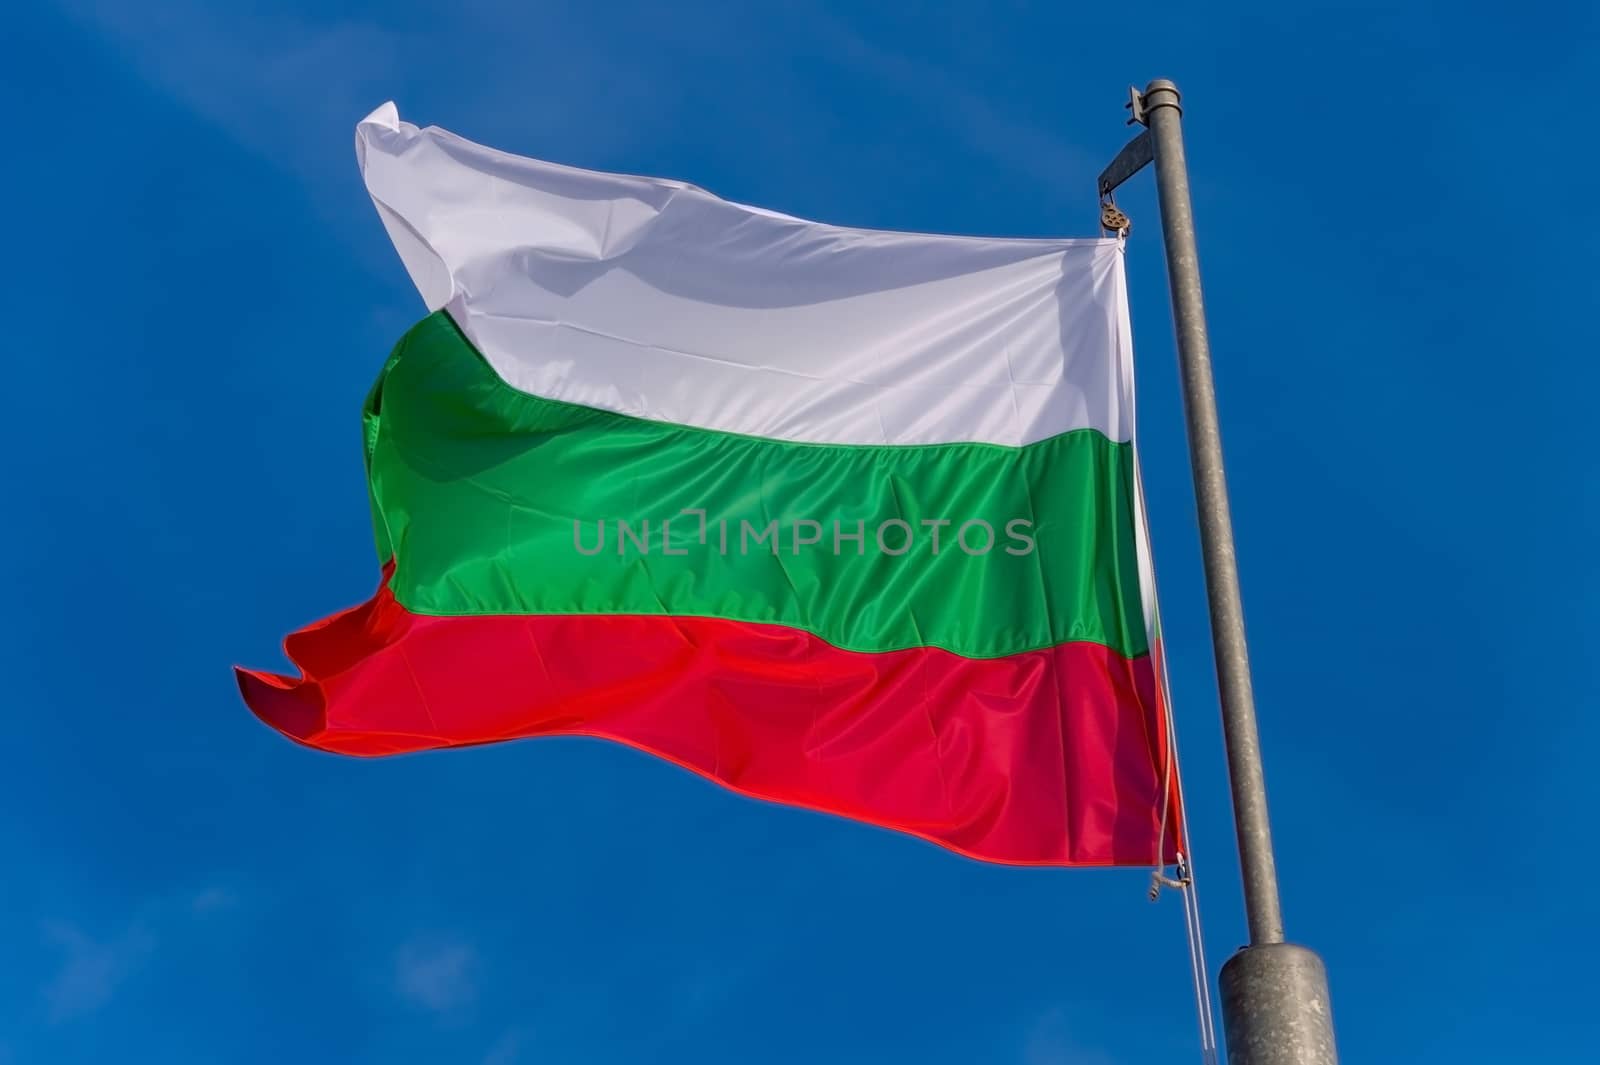 Bulgarian flag waving against blue sky in Boulogne sur Mer, France.